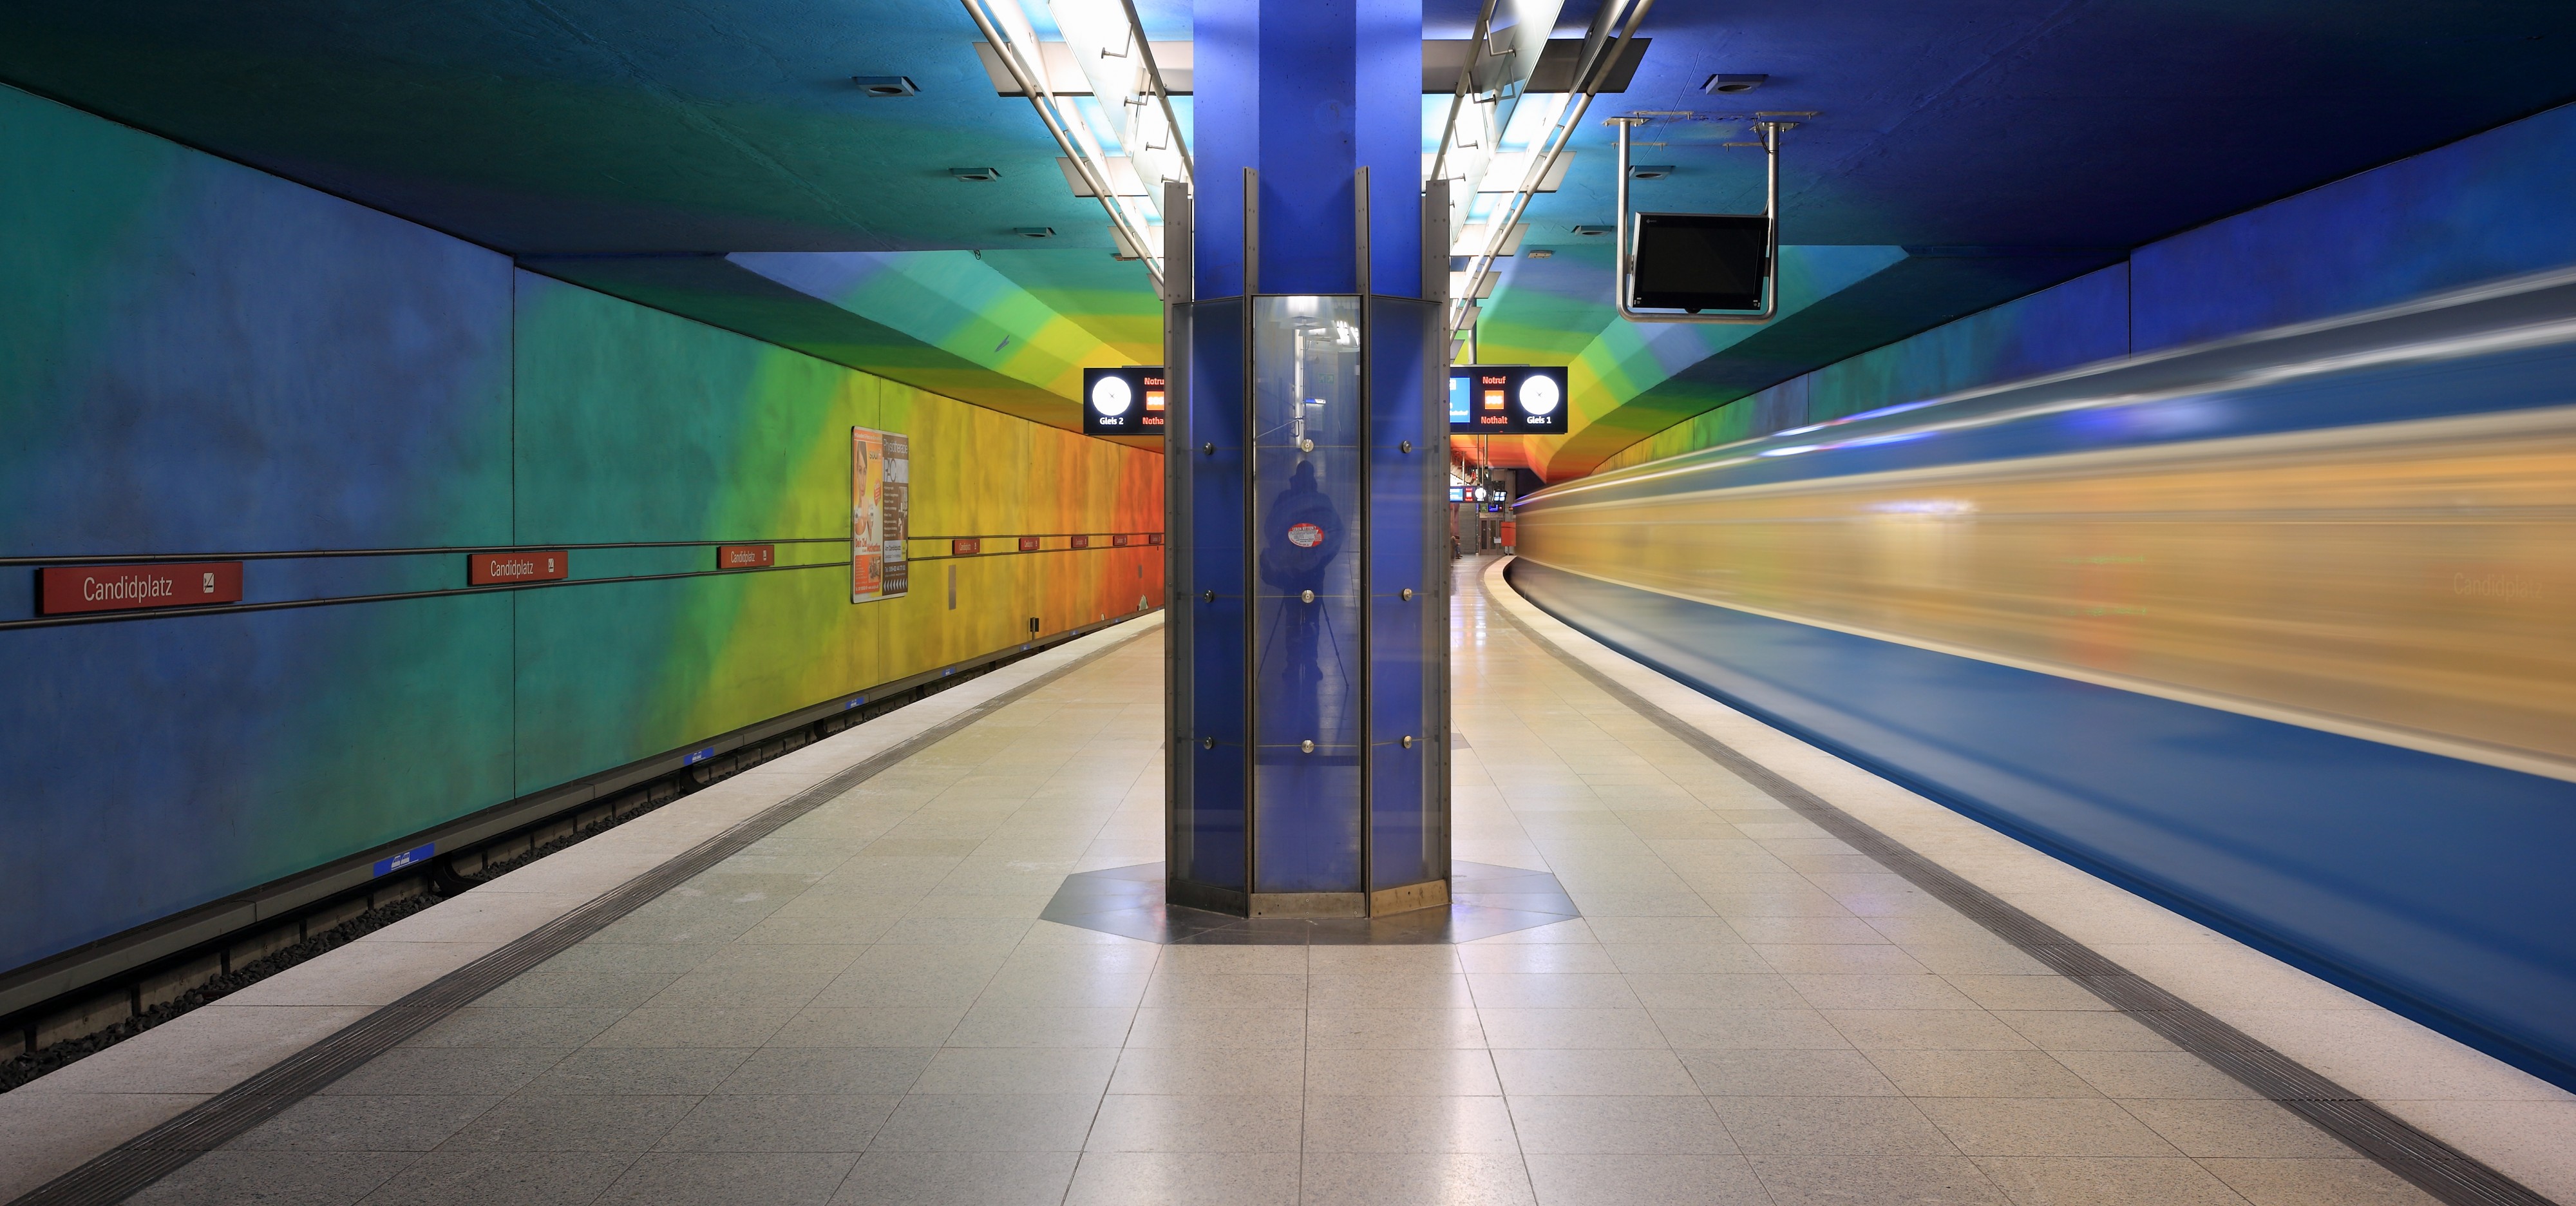 Munich subway station Candidplatz